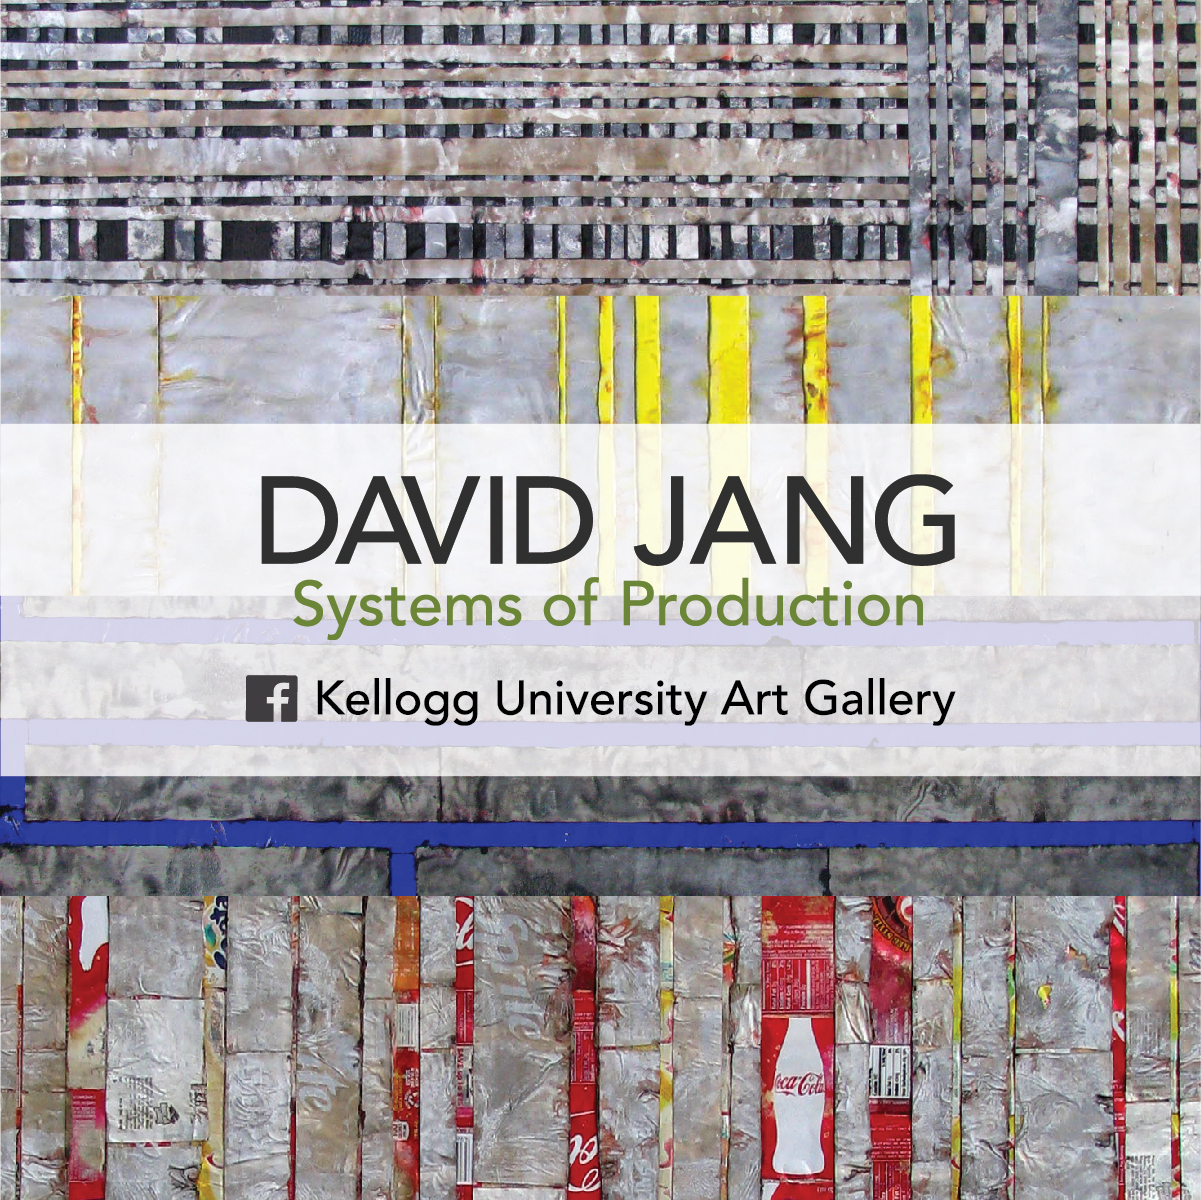 David Jang